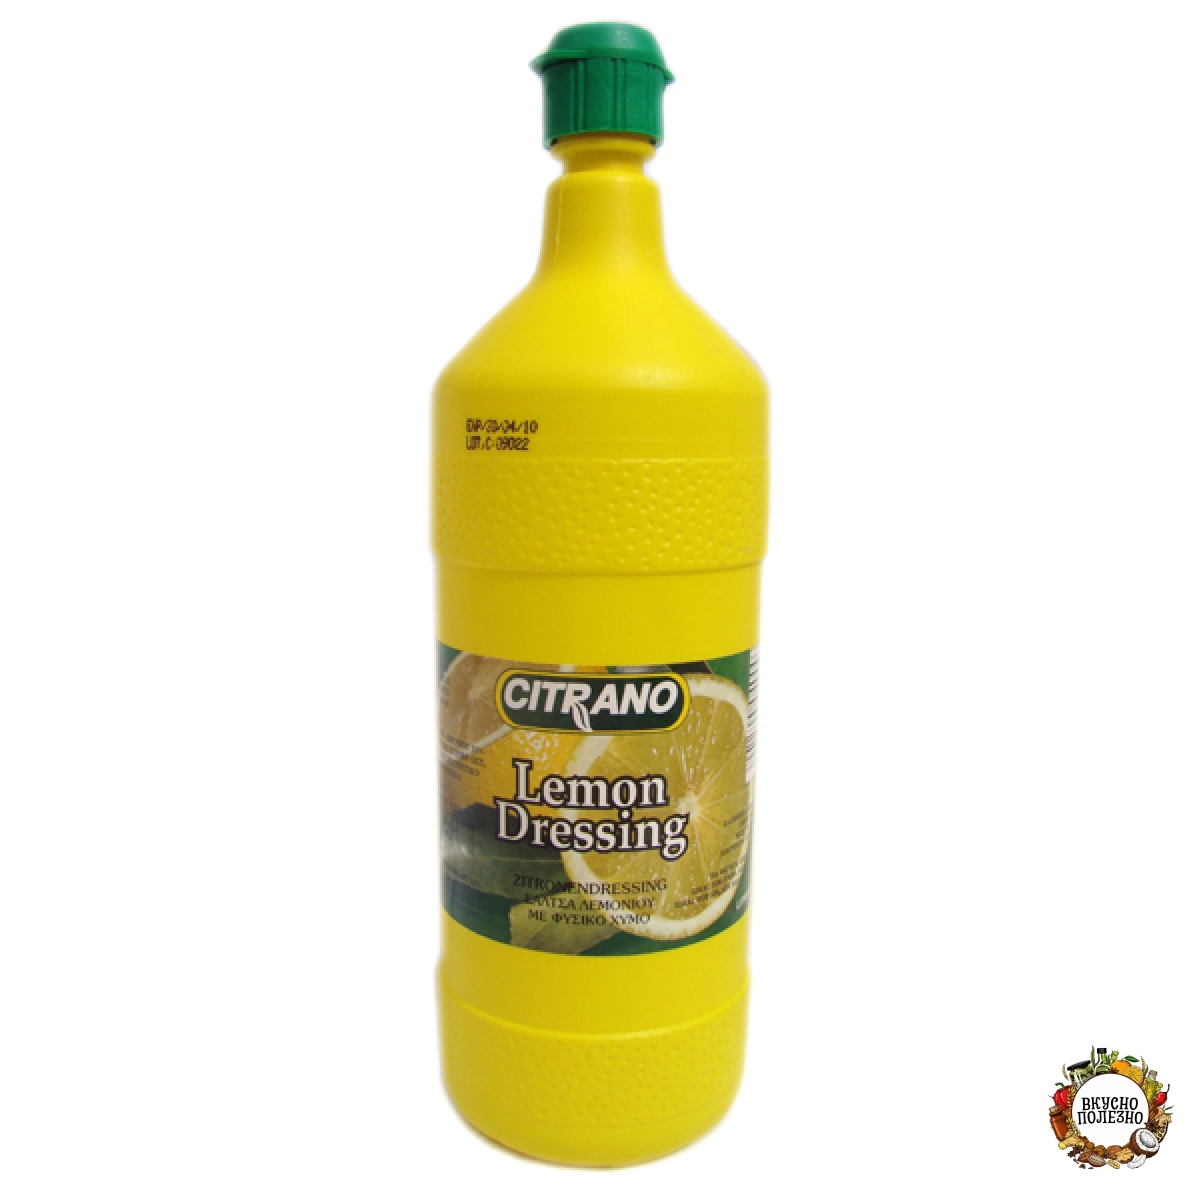 Лимонный концентрат Цитрано 500 мл. Citrano сок лимонный концентрированный, 500 мл. Приправа лимонная Citrano, 500 мл. Лимонный сок Citrano Lemon. Концентрат лимона